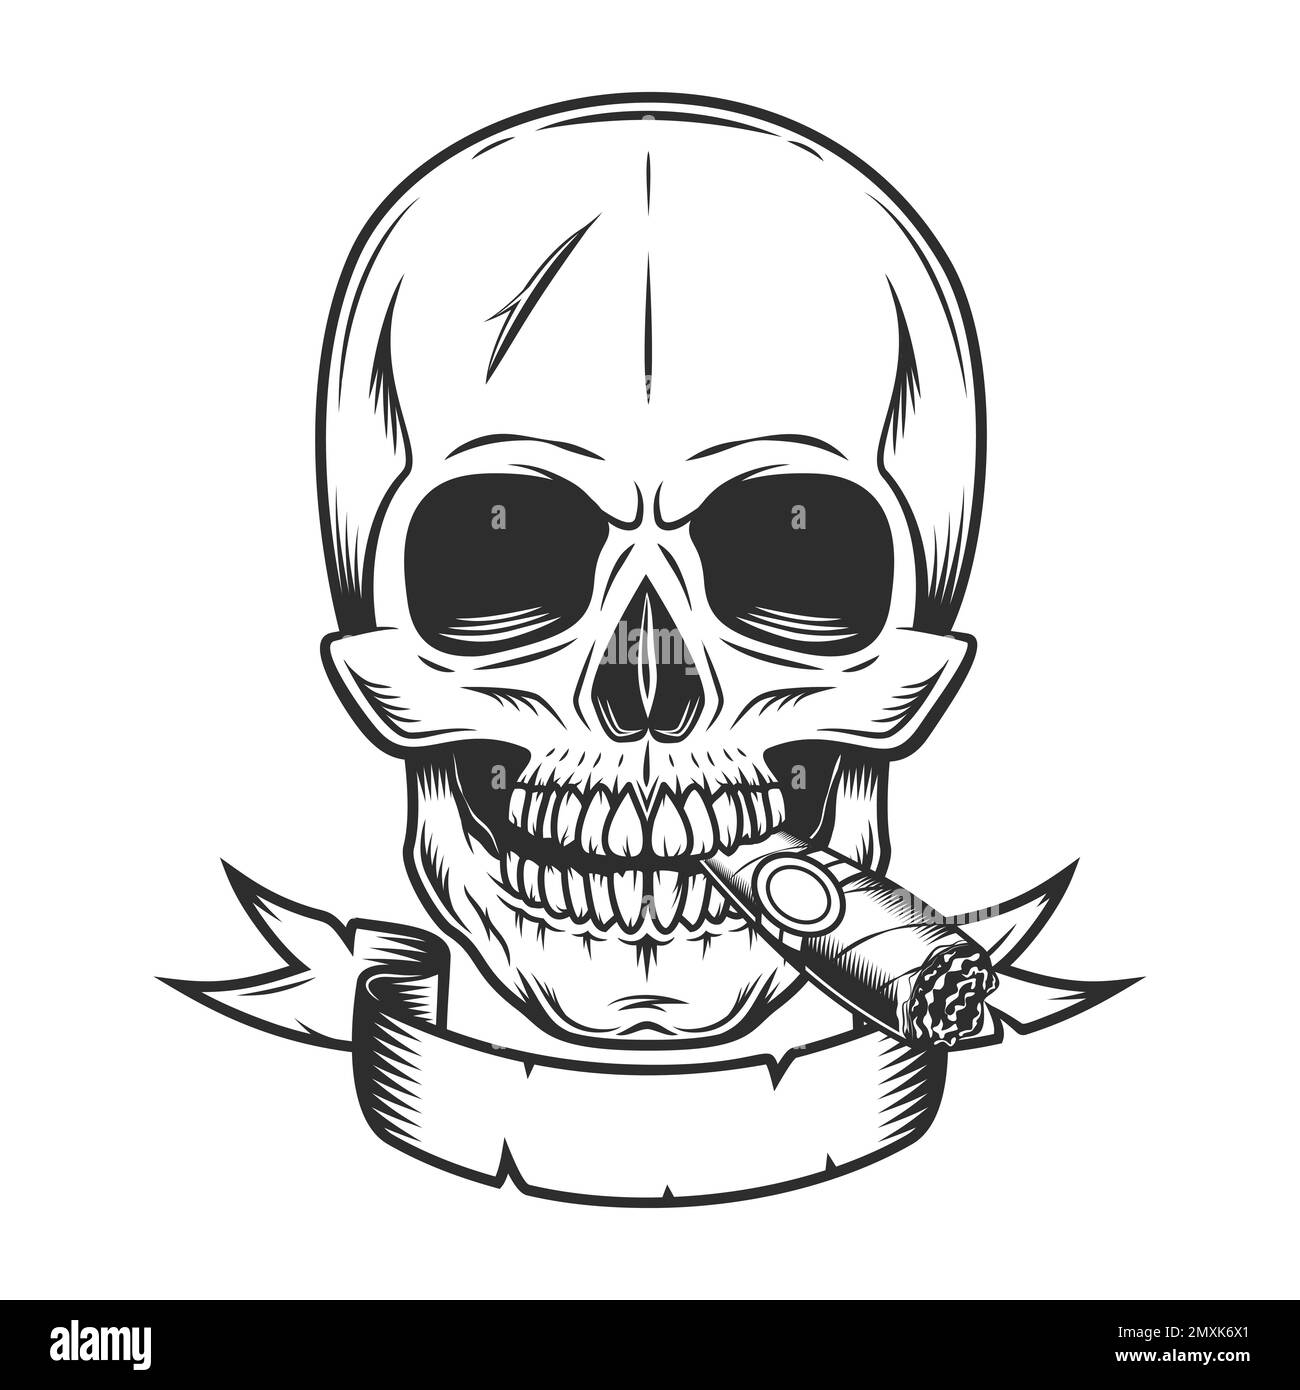 Figura in stile monocromatico vintage con fumo di sigaretta o sigaro per fumare il cranio Illustrazione Vettoriale